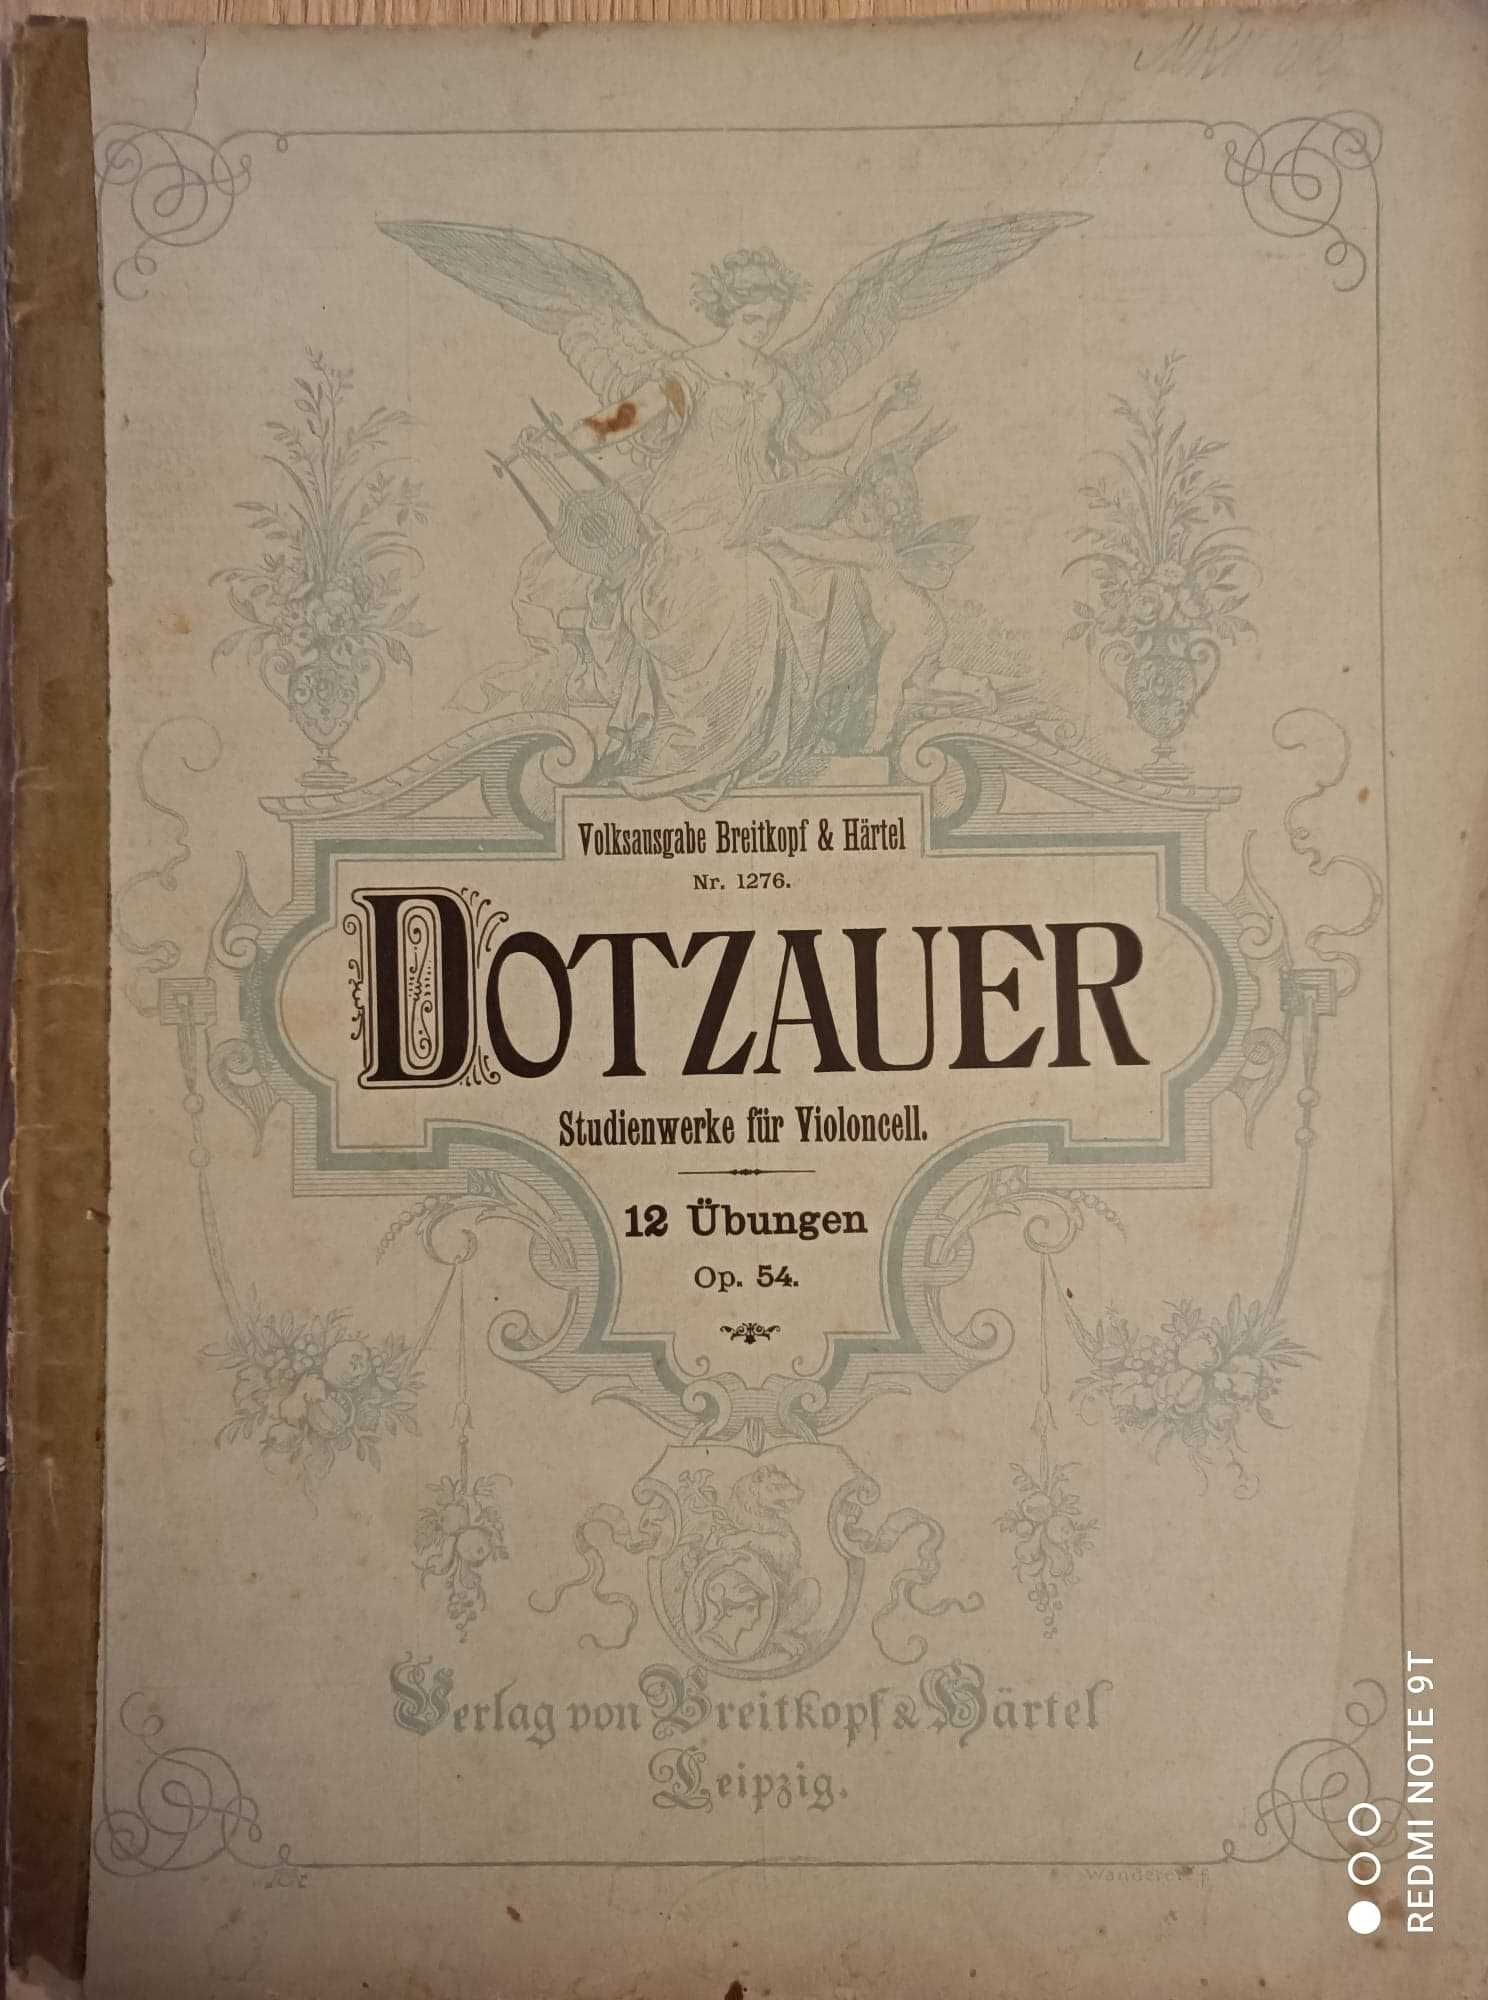 Nuty na wiolonczelę  Dotzauer  12 etiud op.54  wyd. Breitkopf  Hartel